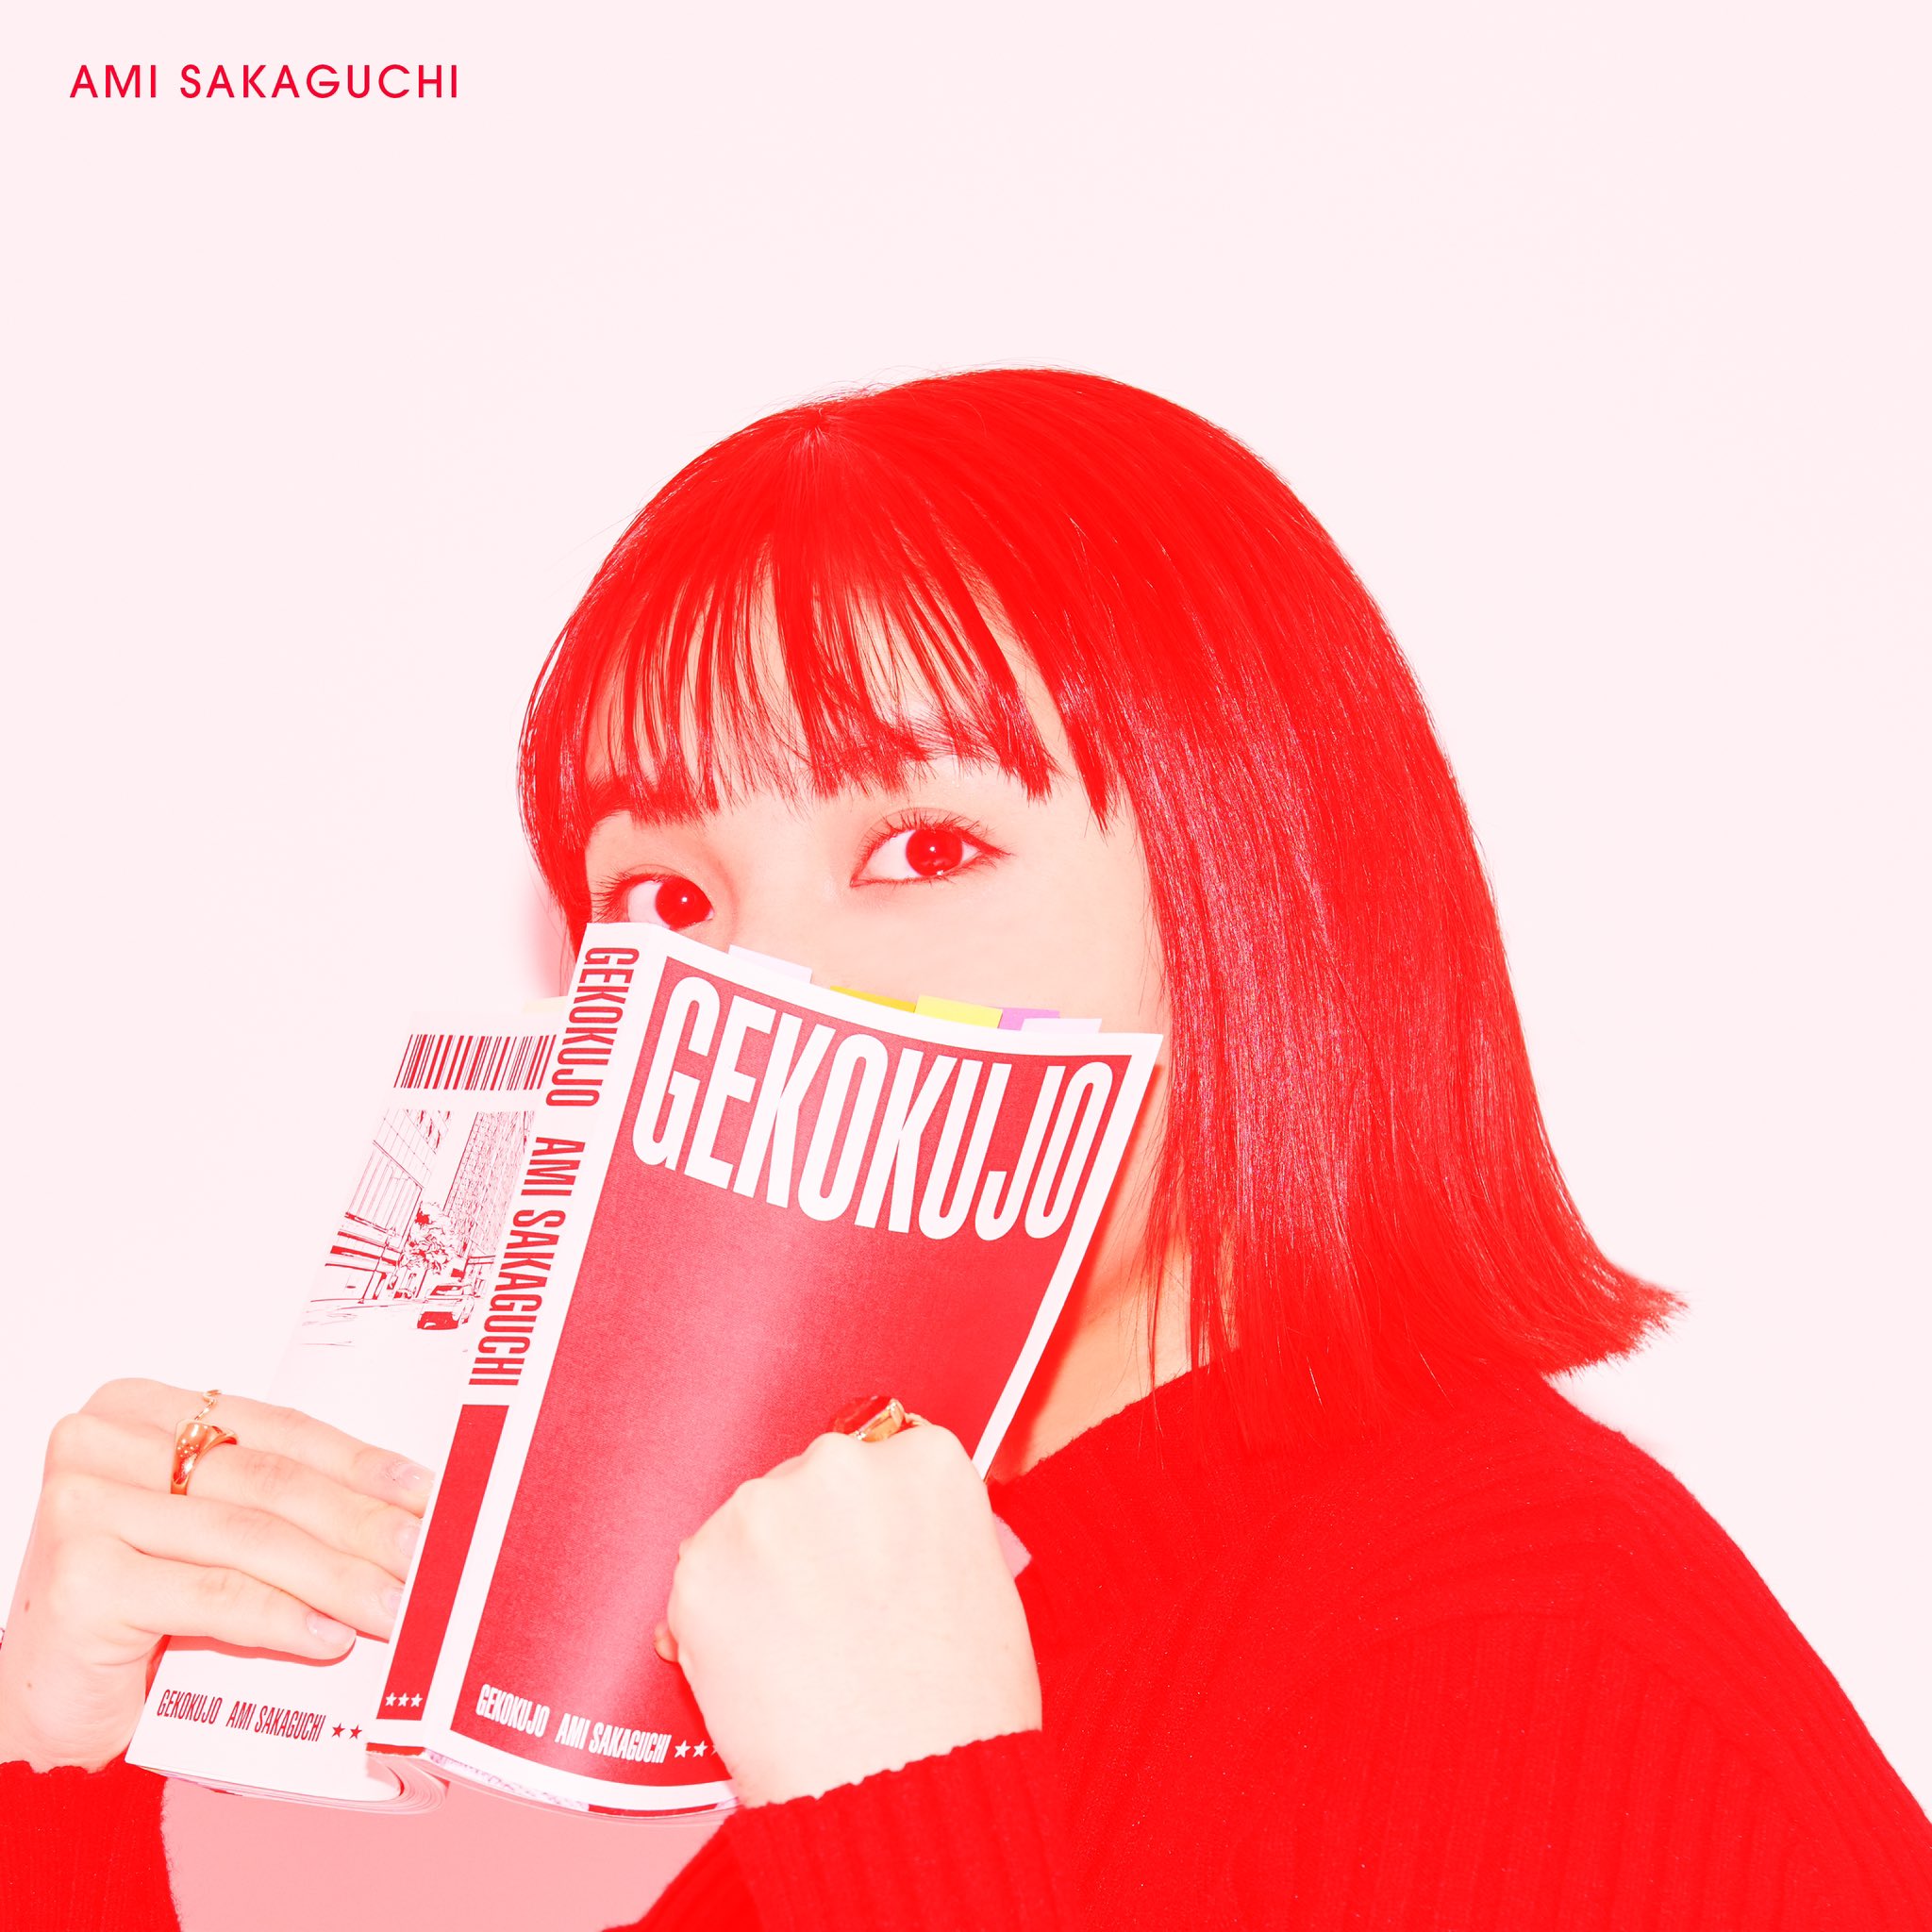 Ami Sakaguchi - Gekokujou lyrics, lirik lagu ami sakaguchi gekokujou, lirik kanji romaji info lagu ami sakaguchi gekokujou, singel terbaru jpop 2023